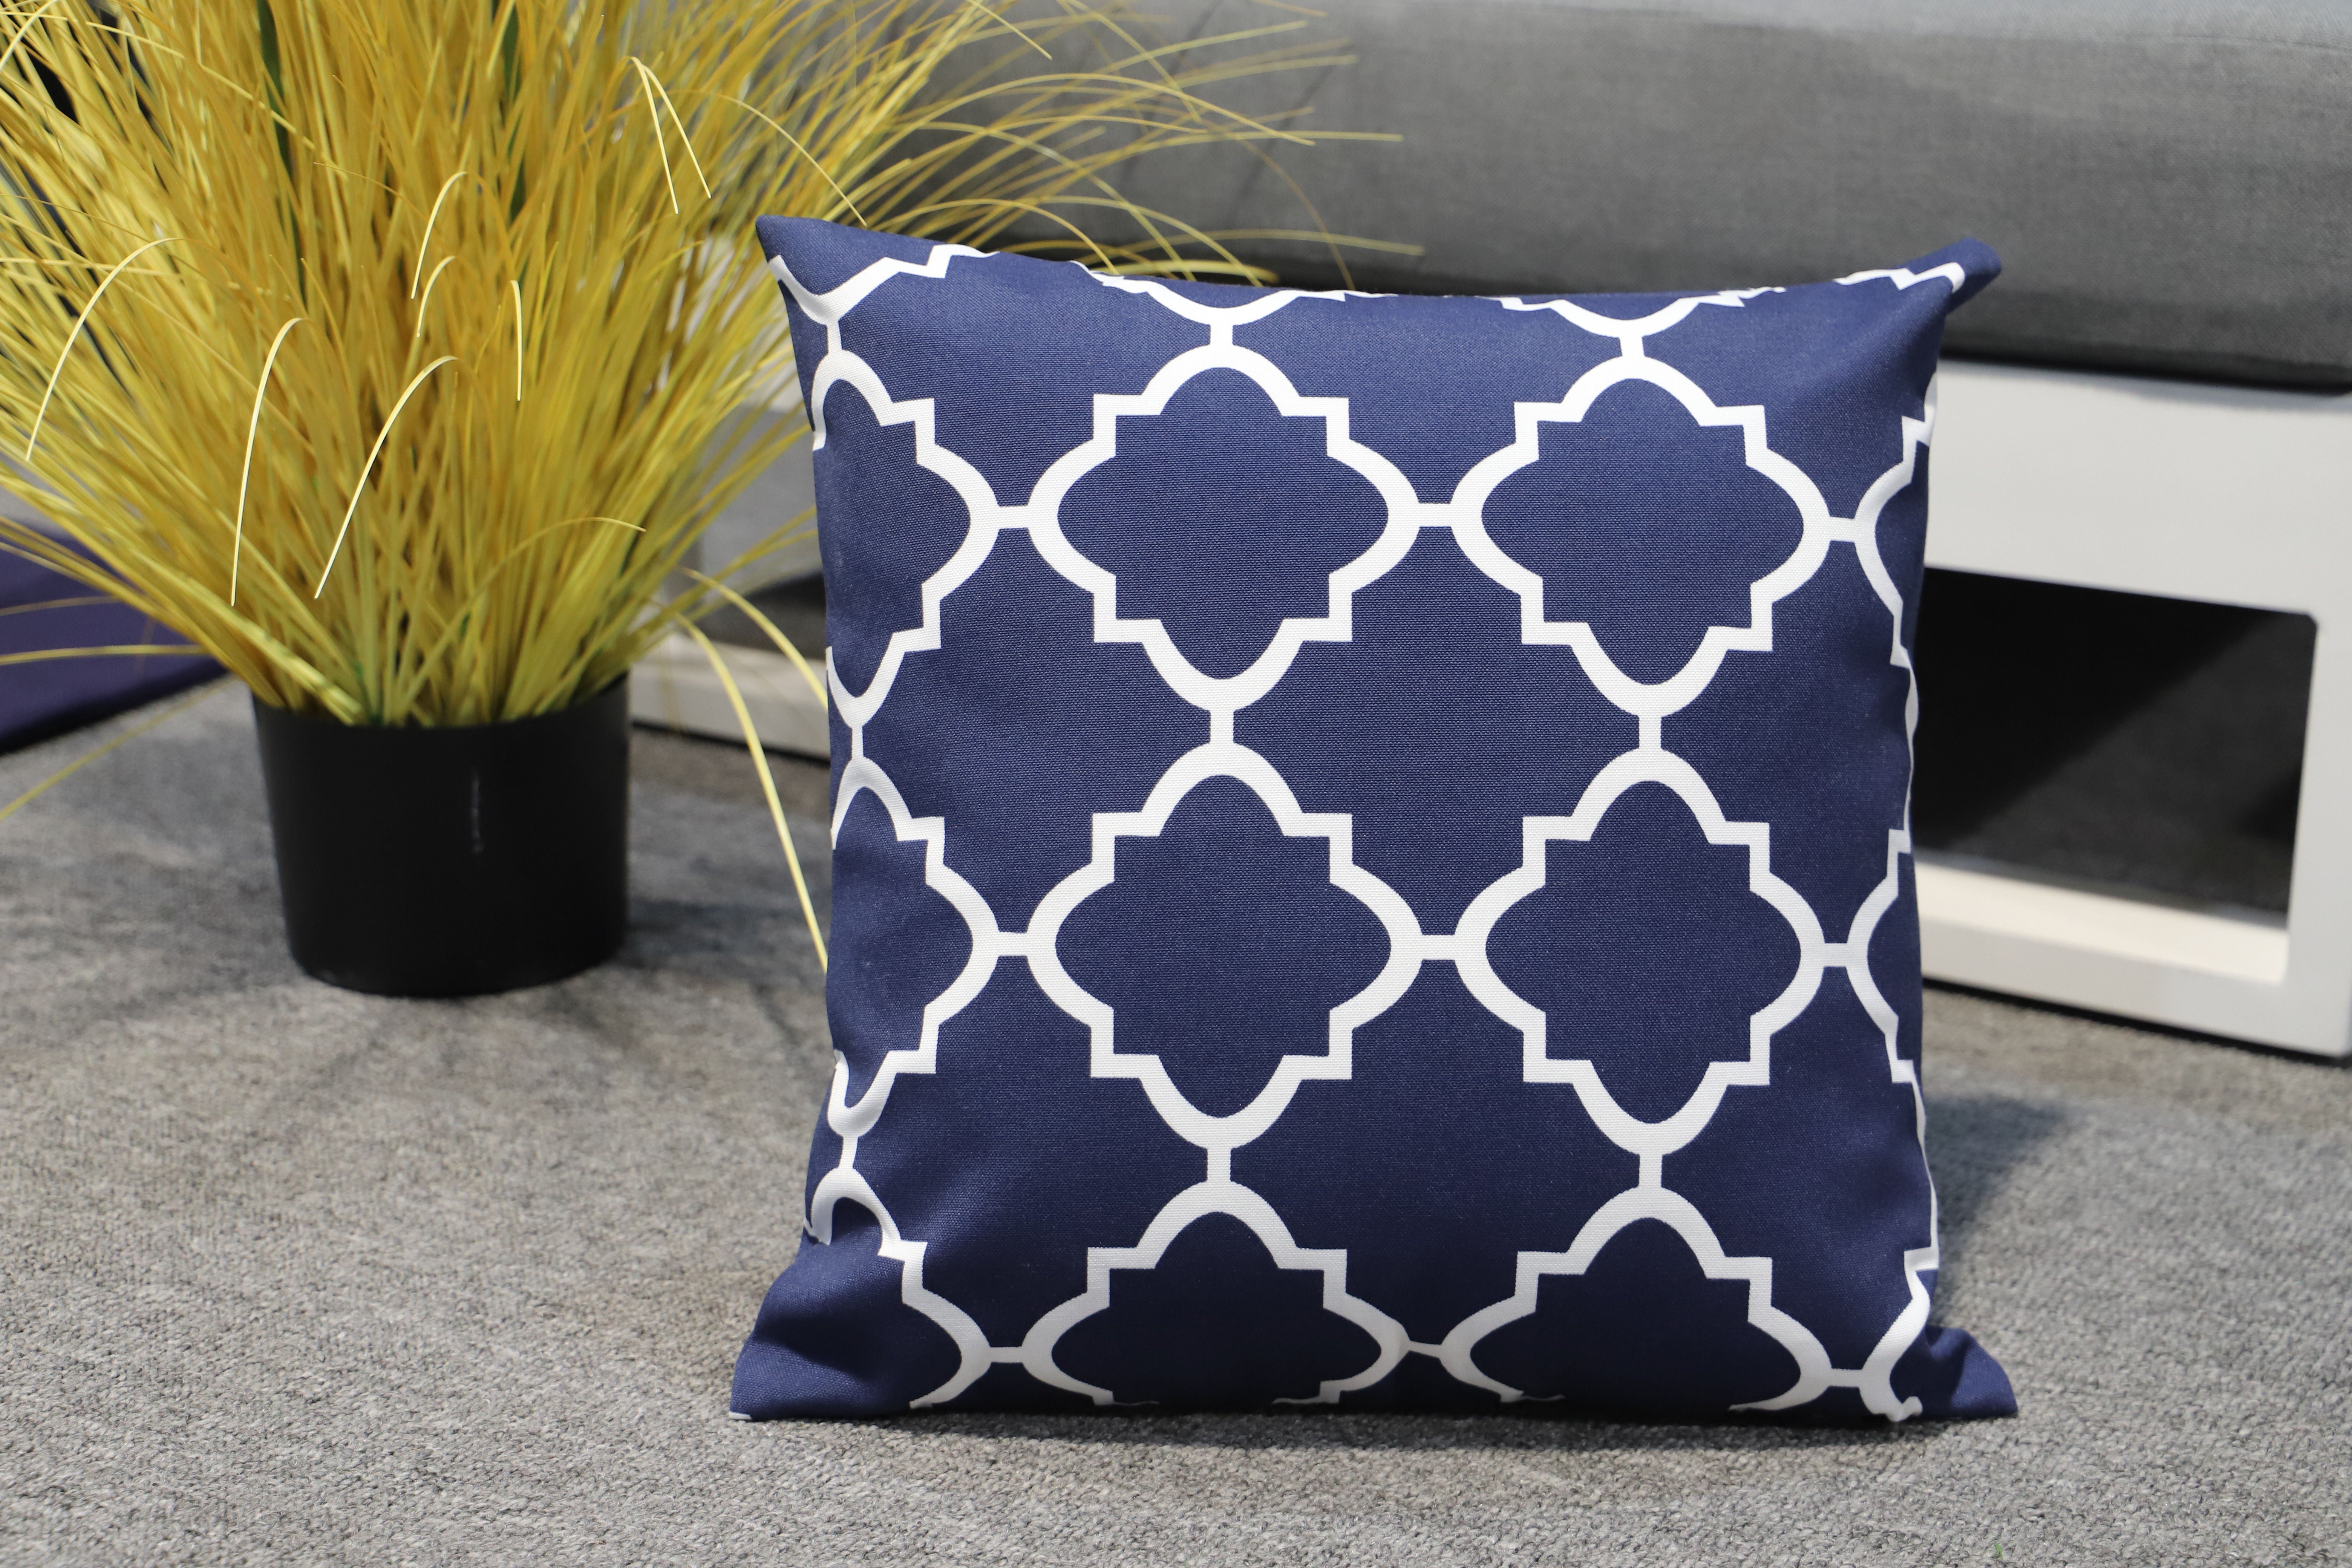 MOSS MOSS-0912K - 16 "x 16" NAVY BLUE BACKGROUND decorative pillow